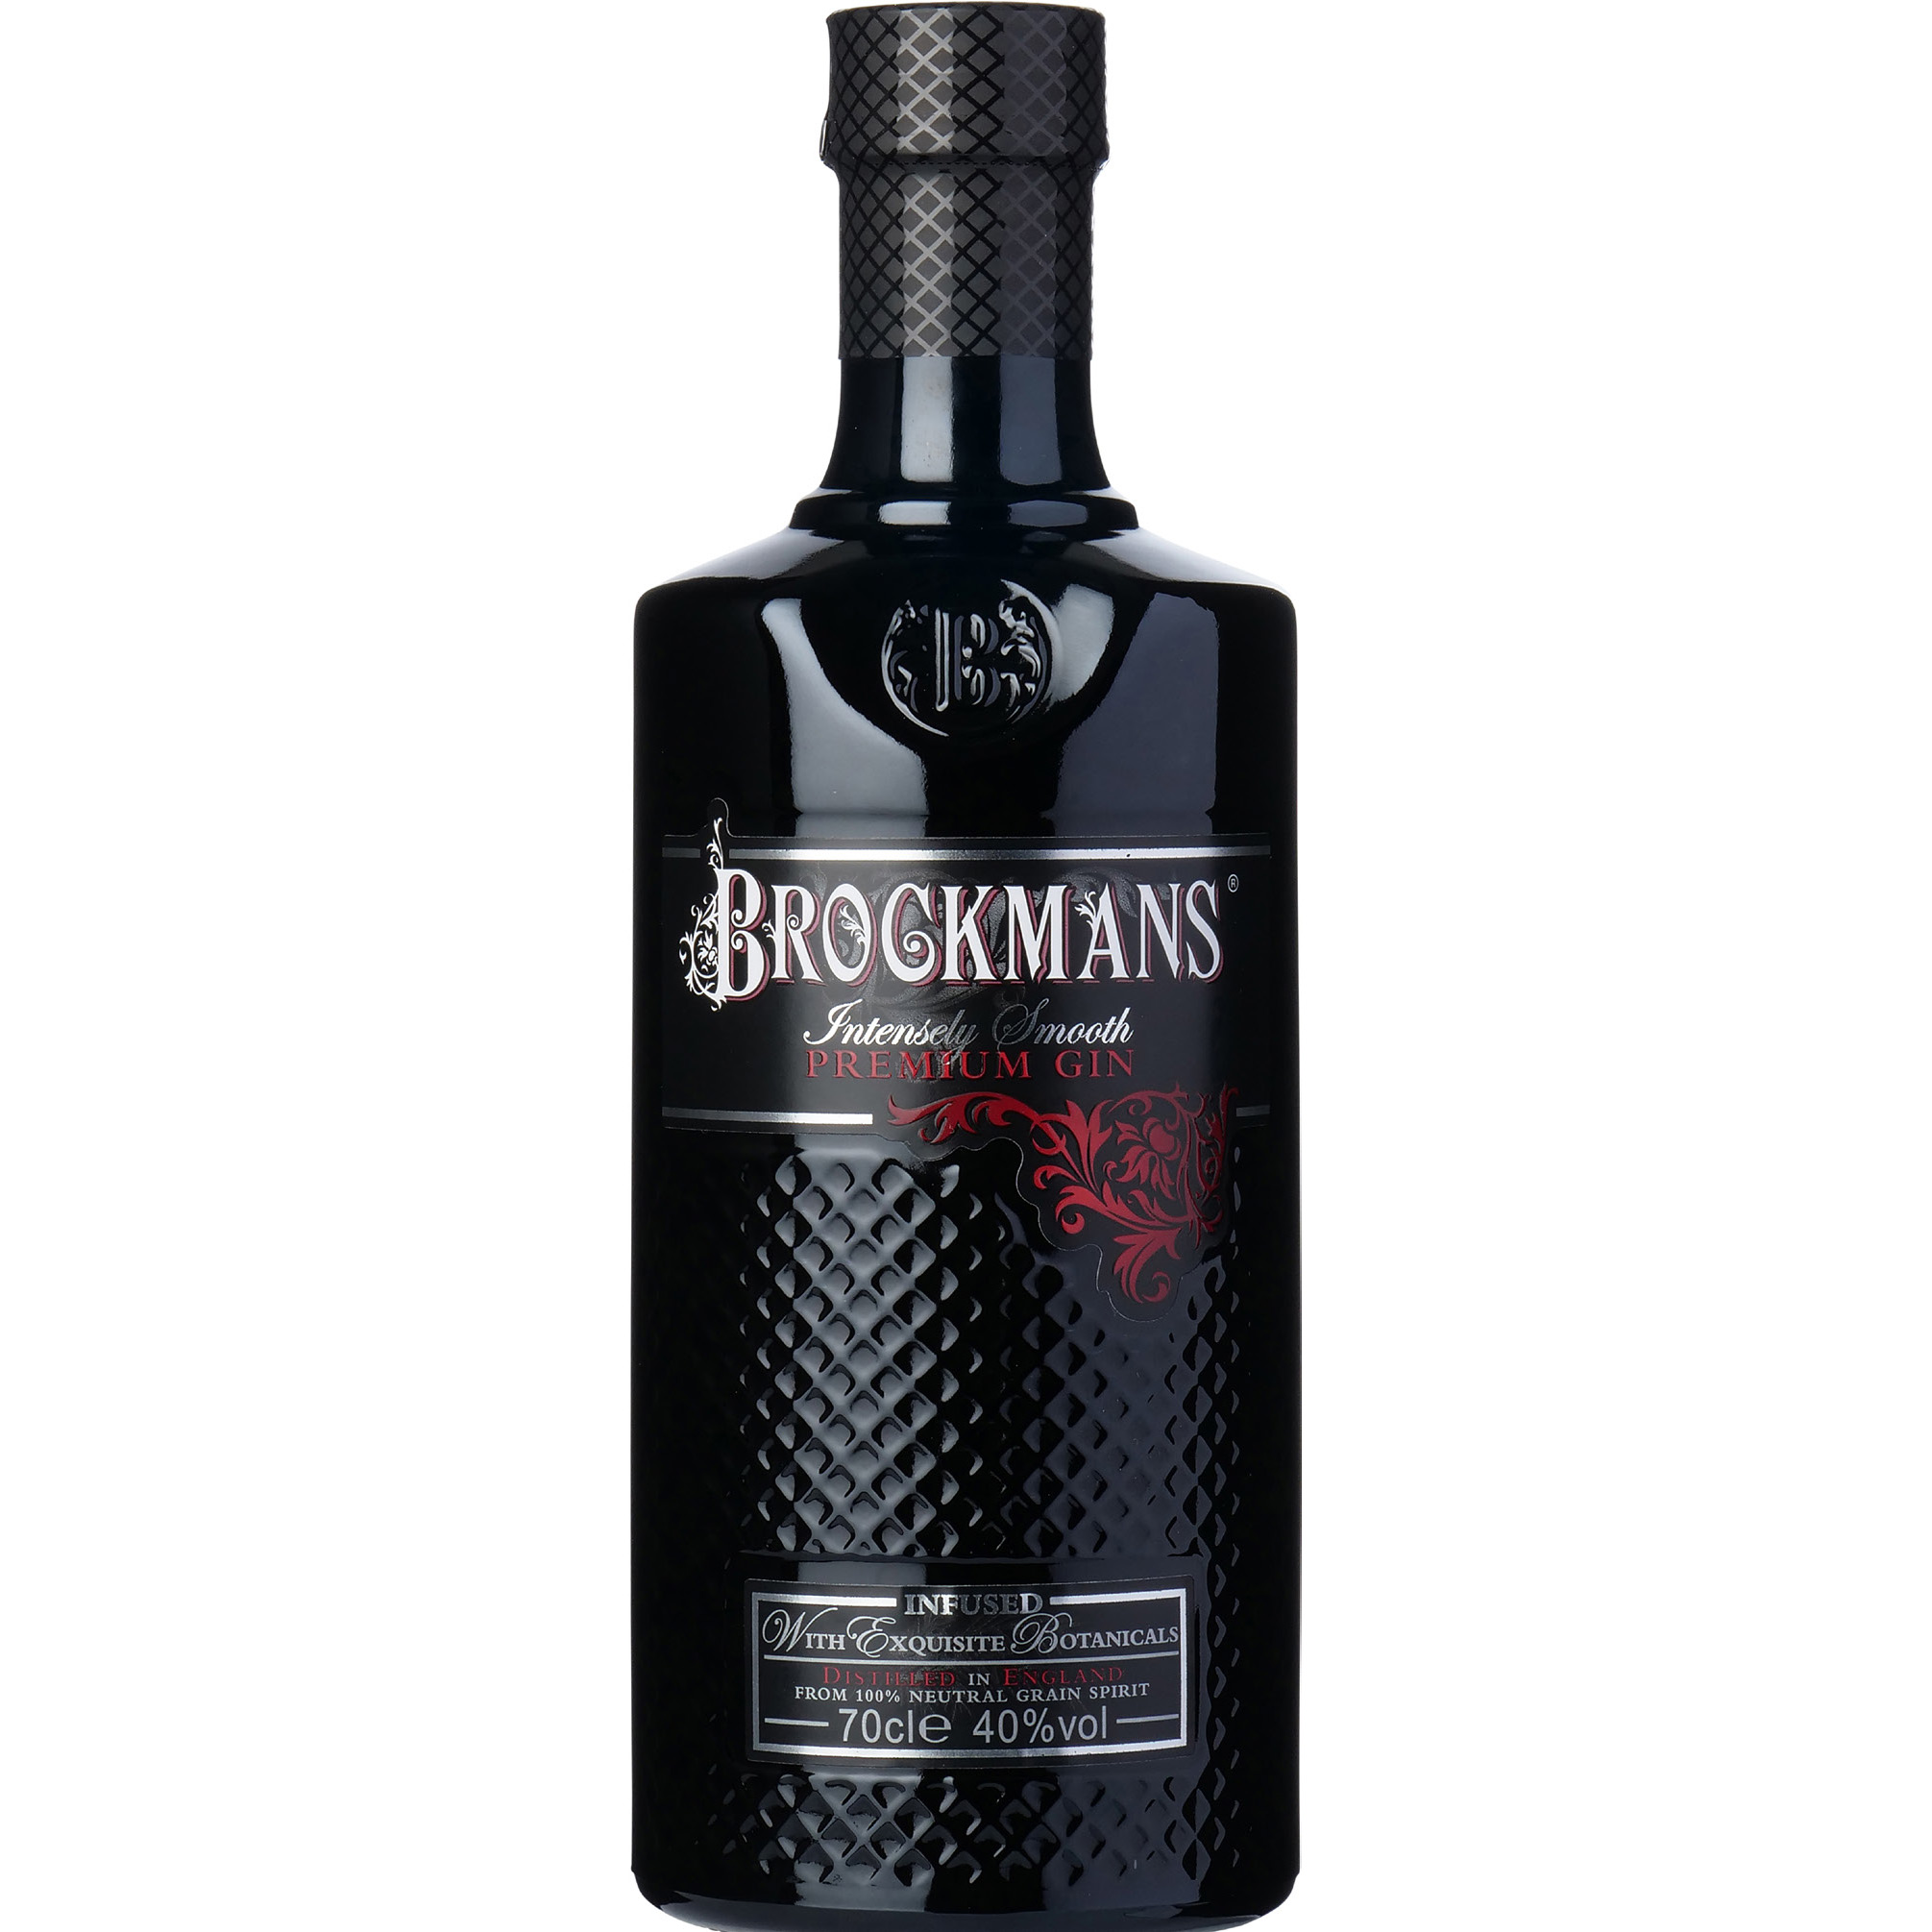 Brug Brockmans Premium Gin til en forbedret oplevelse